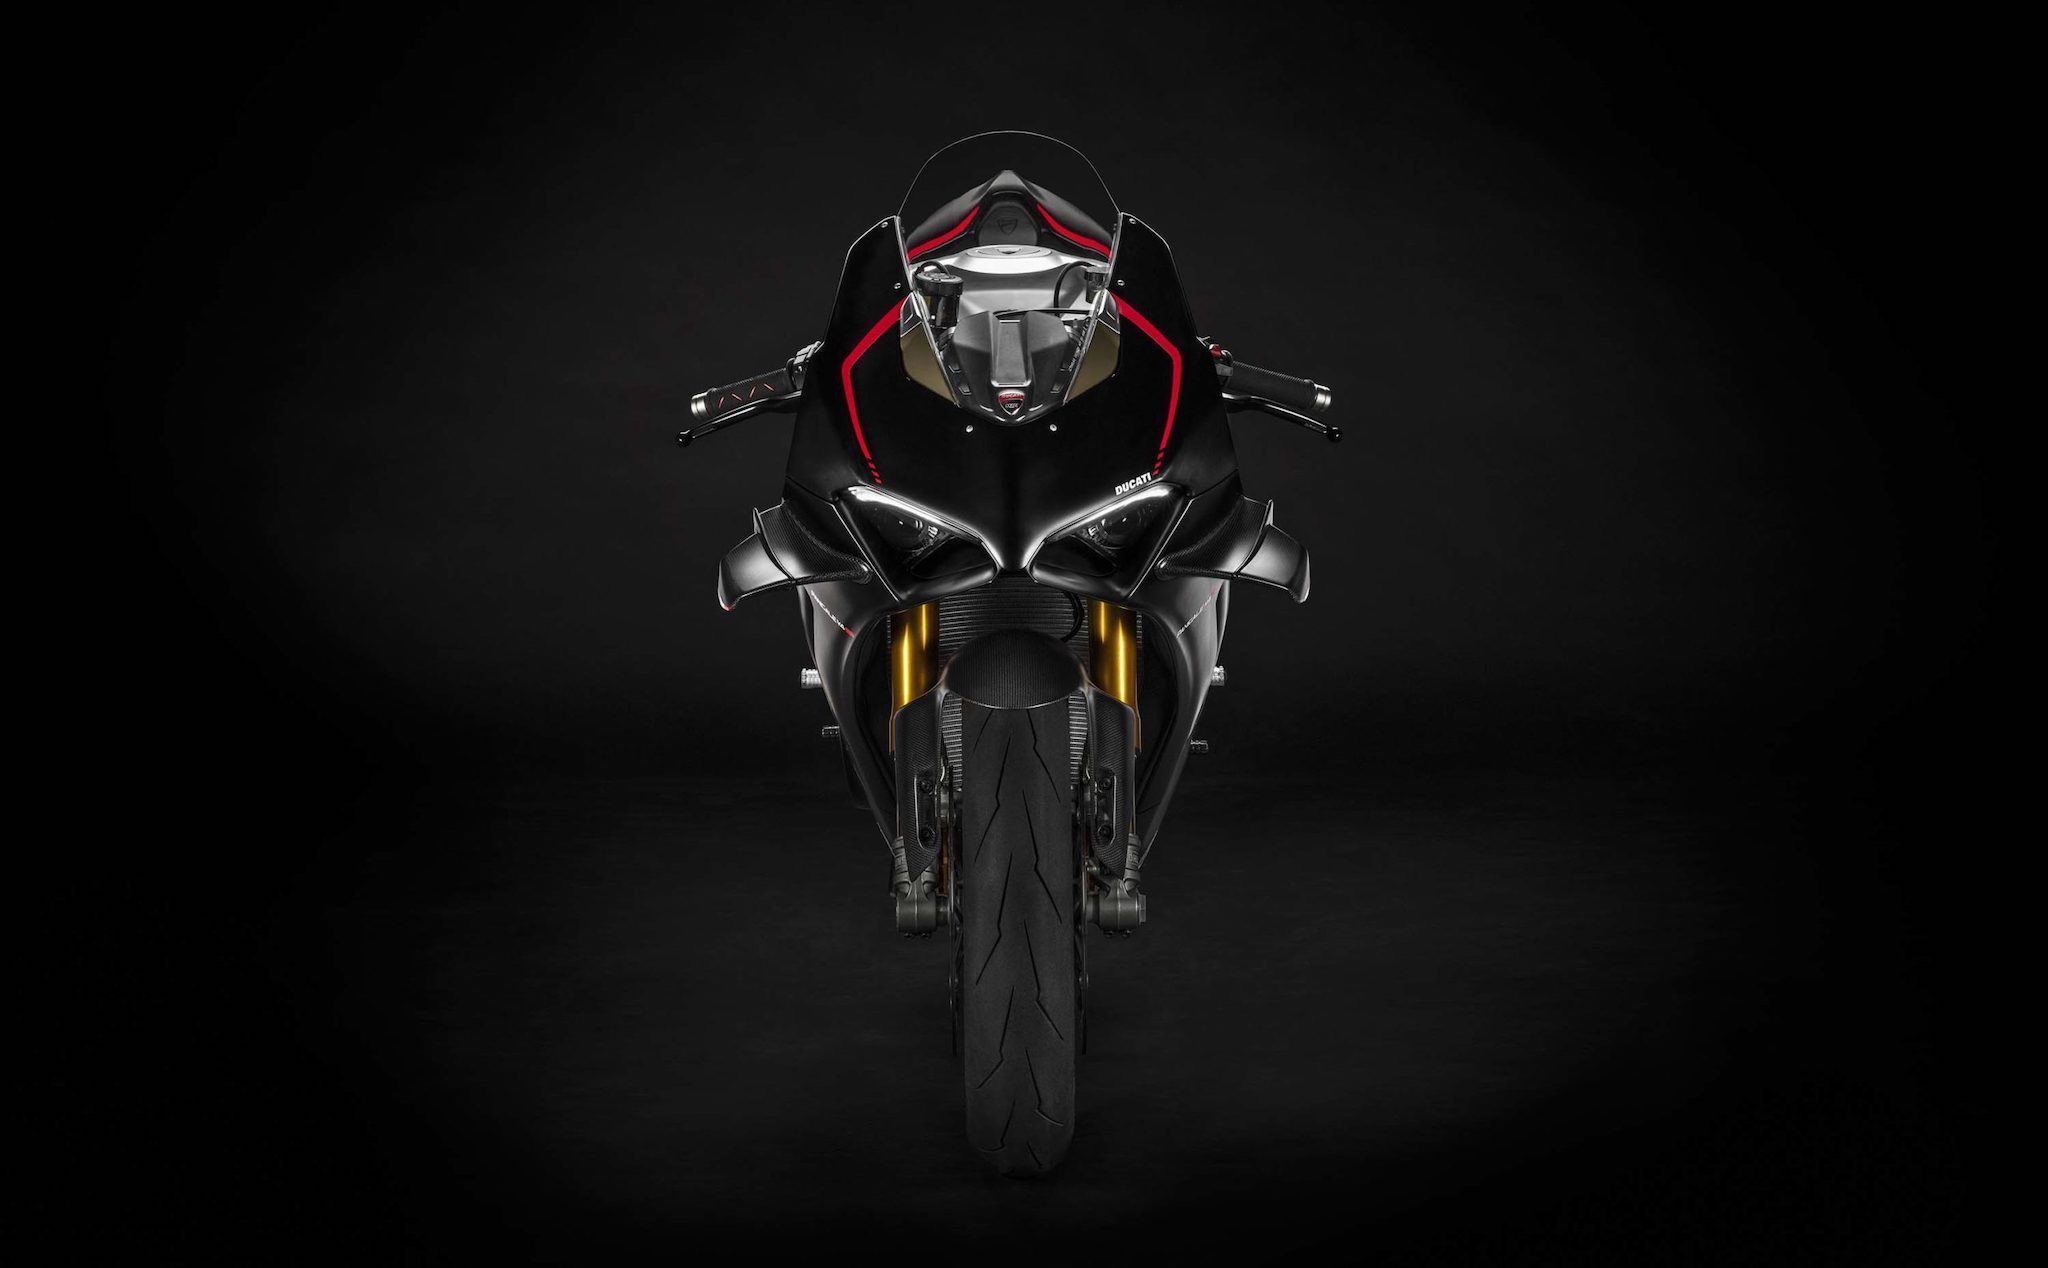 2021-Ducati-Panigale-V4-SP-1.jpg